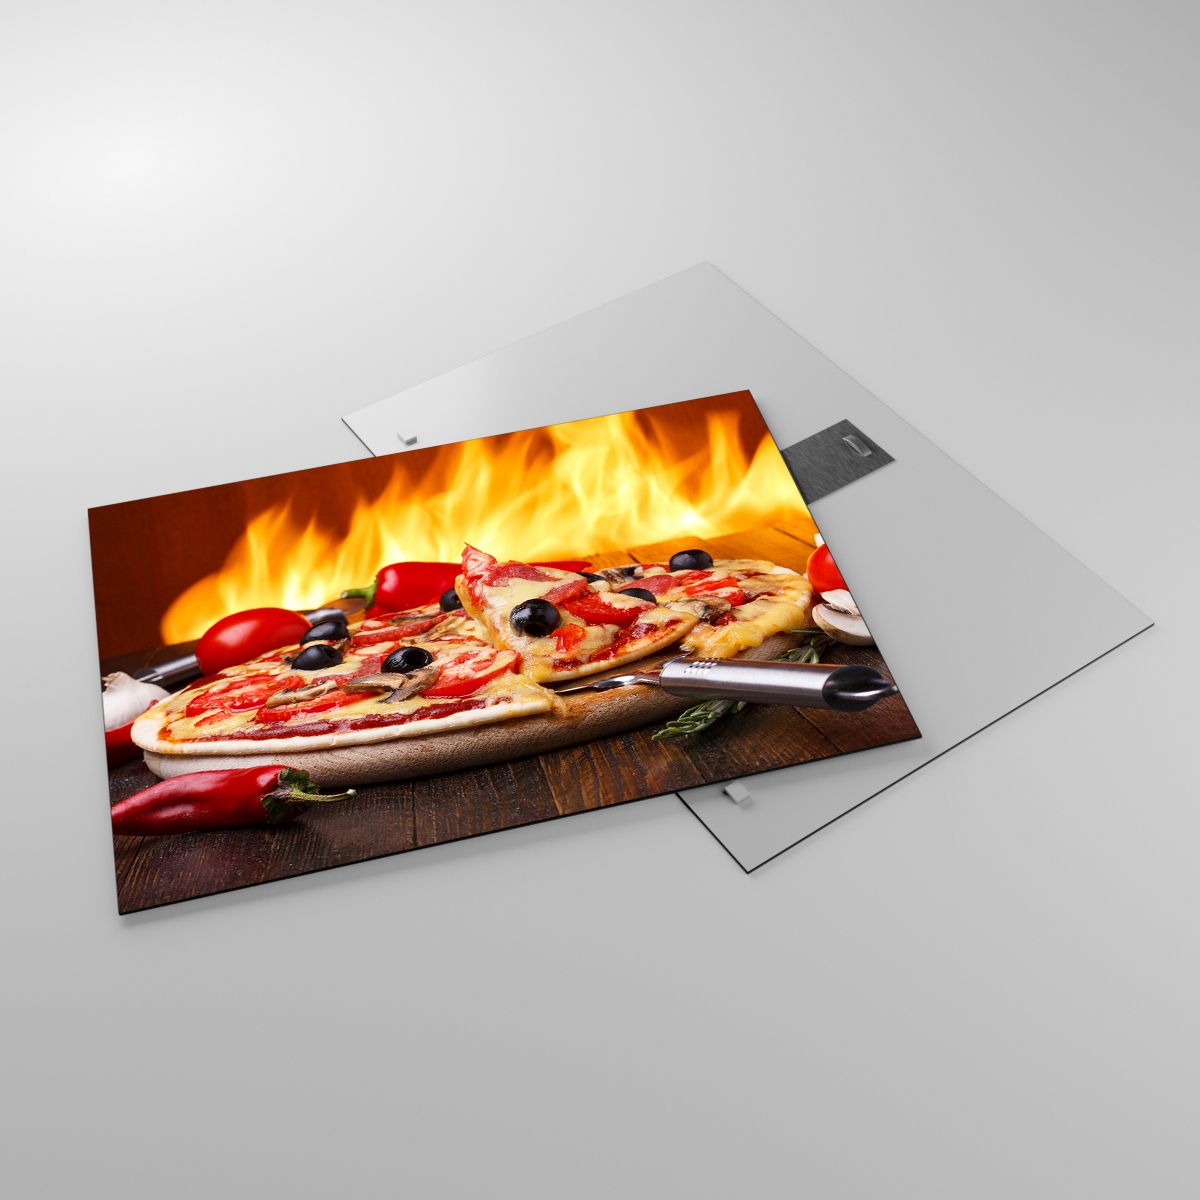 Glasbild Gastronomie, Glasbild Pizza, Glasbild Italien, Glasbild Feuer, Glasbild Köstliches Gericht